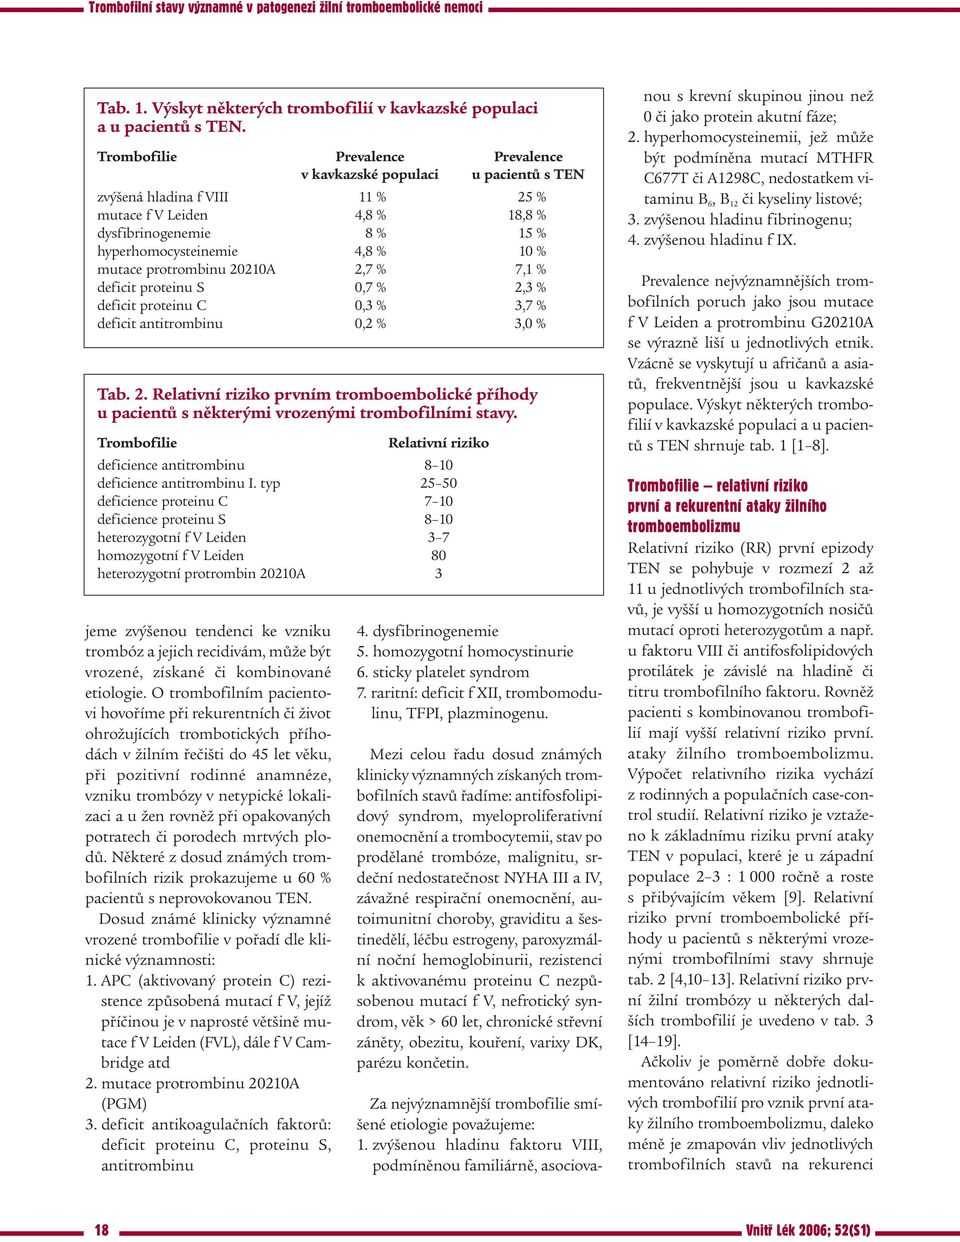 mutace protrombinu 20210A 2,7 % 7,1 % deficit proteinu S 0,7 % 2,3 % deficit proteinu C 0,3 % 3,7 % deficit antitrombinu 0,2 % 3,0 % Tab. 2. Relativní riziko prvním tromboembolické příhody u pacientů s některými vrozenými trombofilními stavy.